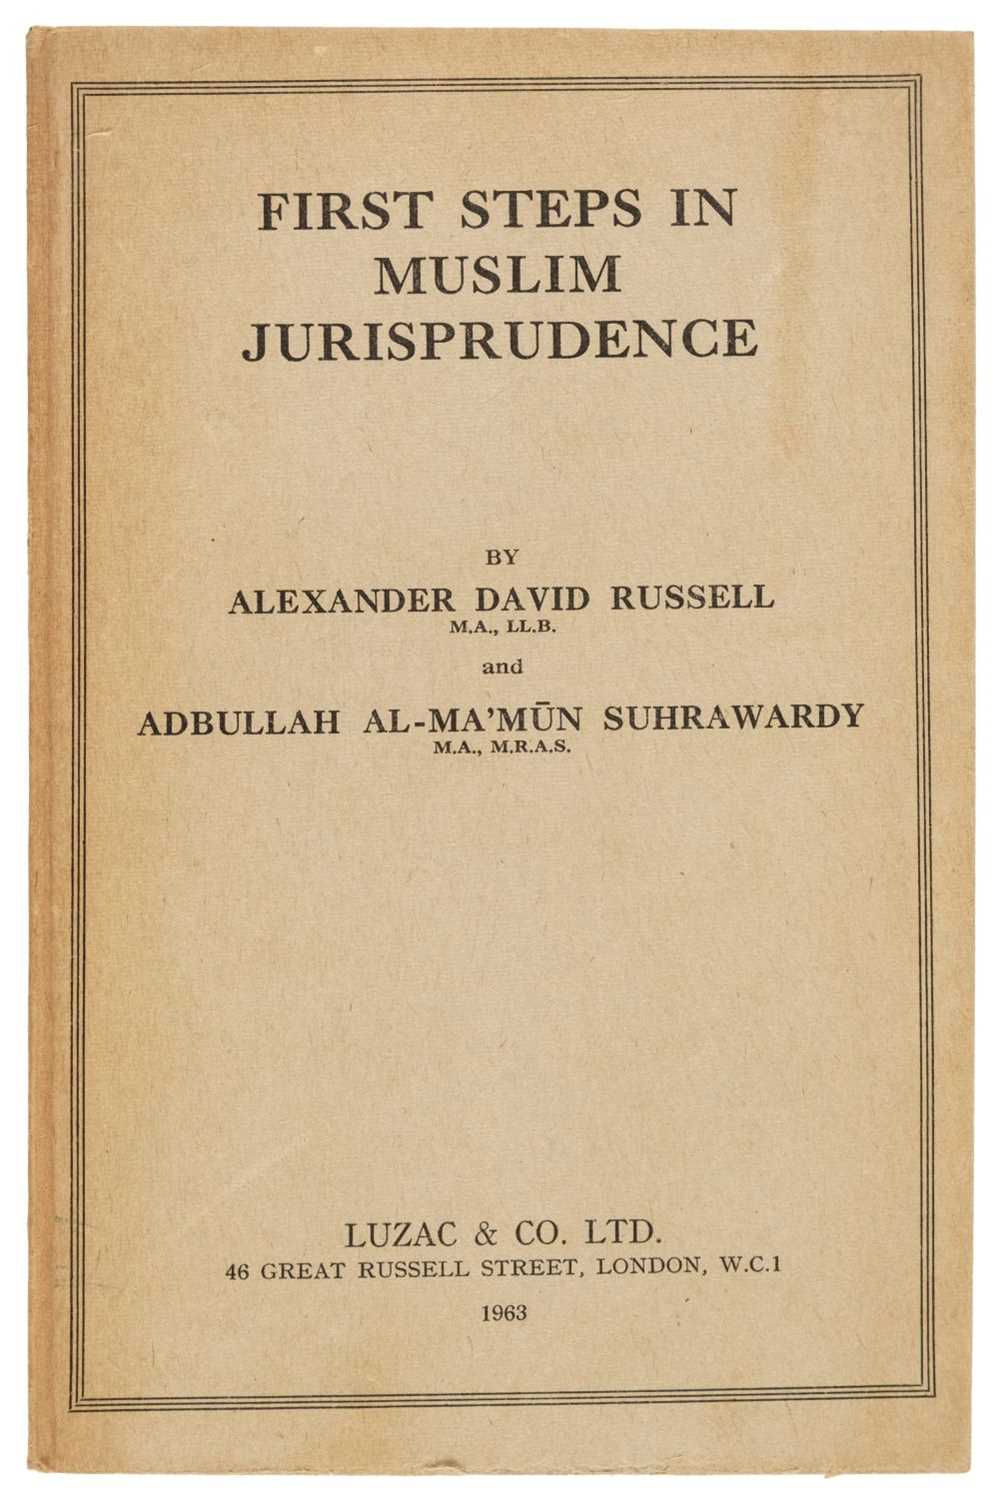 Lot 48 - Abi Zayd (Ibn). First Steps in Muslim Jurisprudence, 1963